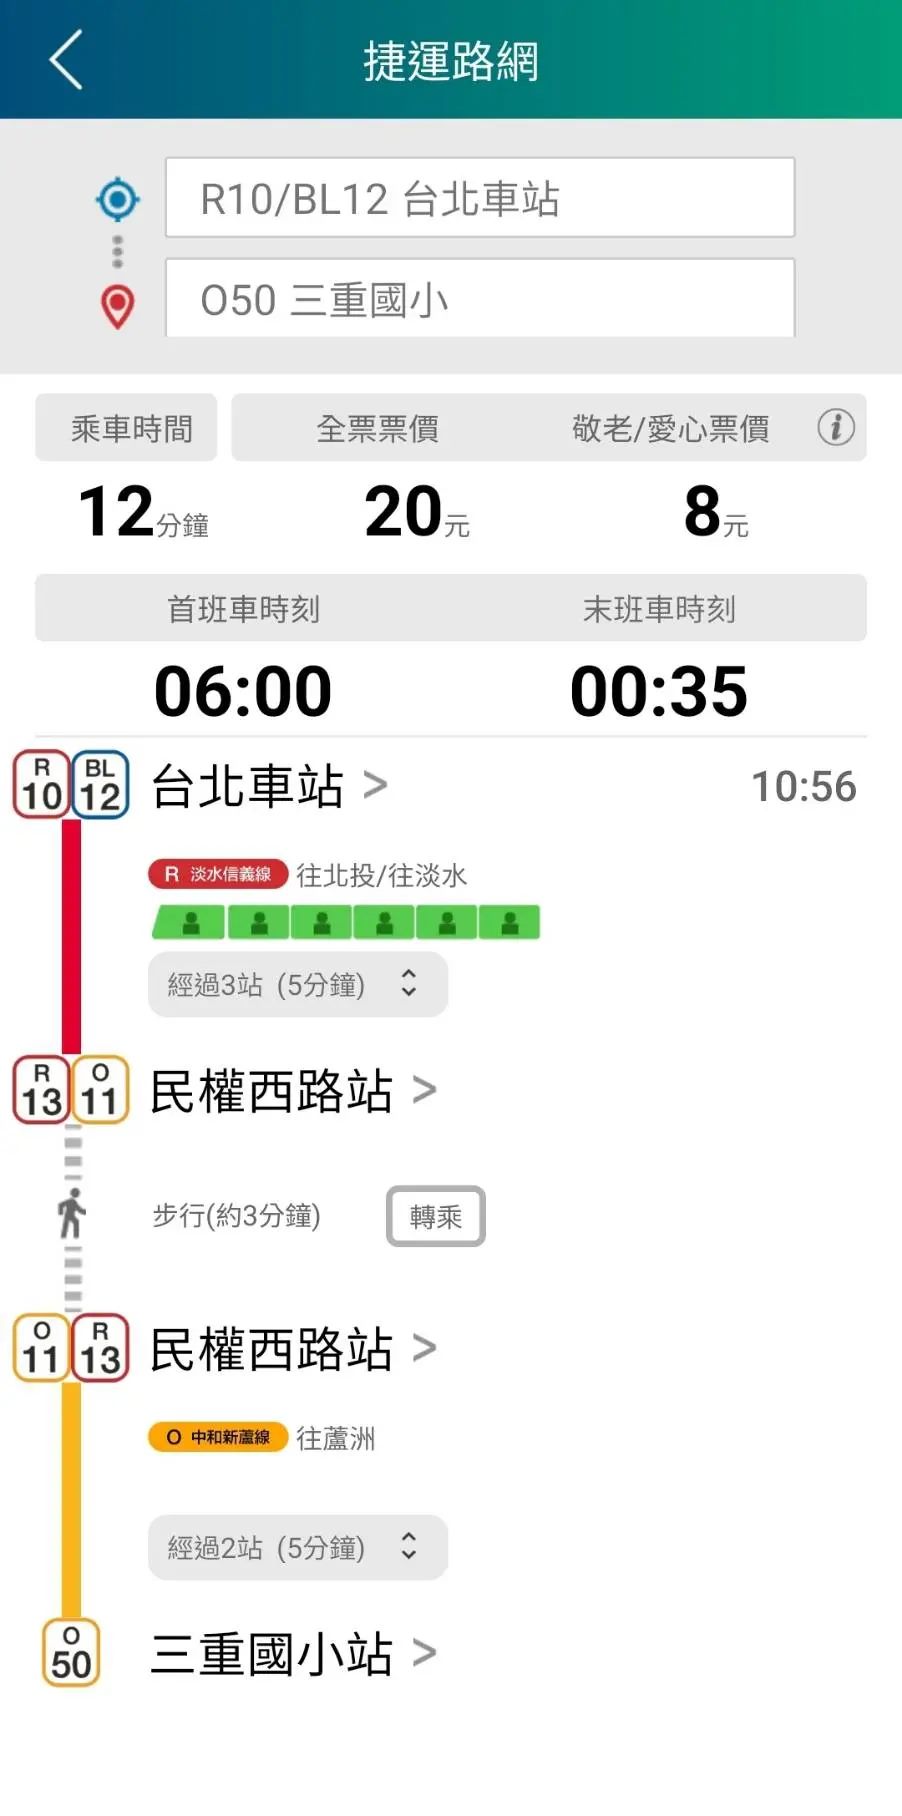 設定好起迄站後，點選螢幕上方選單中的「旅程規劃」按鈕，即可查看該旅程的乘車時間、票價、首末班車時刻